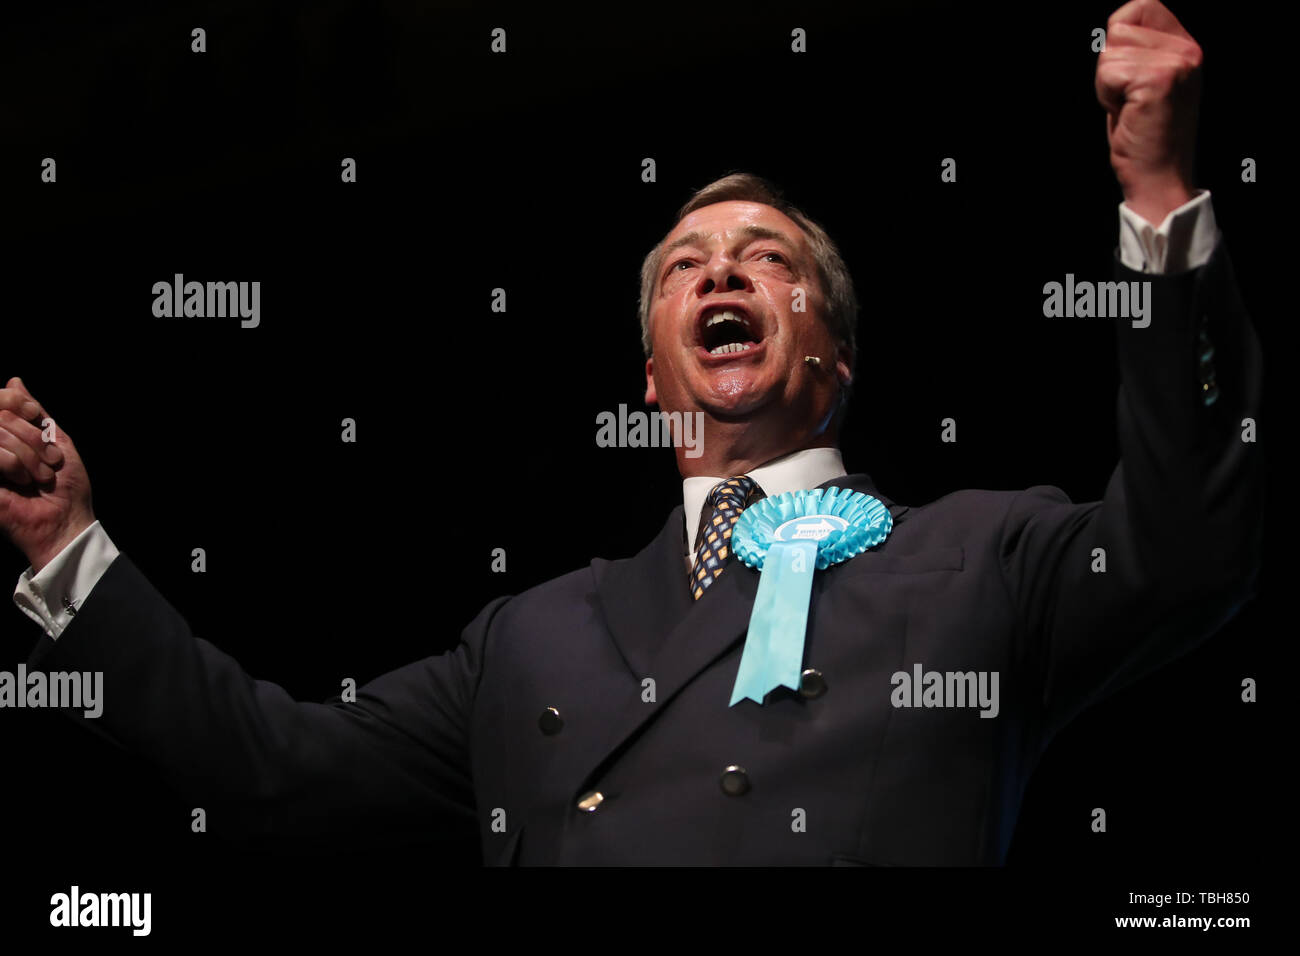 Brexit Nigel Farage chef de parti au cours d'un Brexit rallye Parti au théâtre de Broadway à Peterborough en vue de la prochaine élection partielle. Banque D'Images